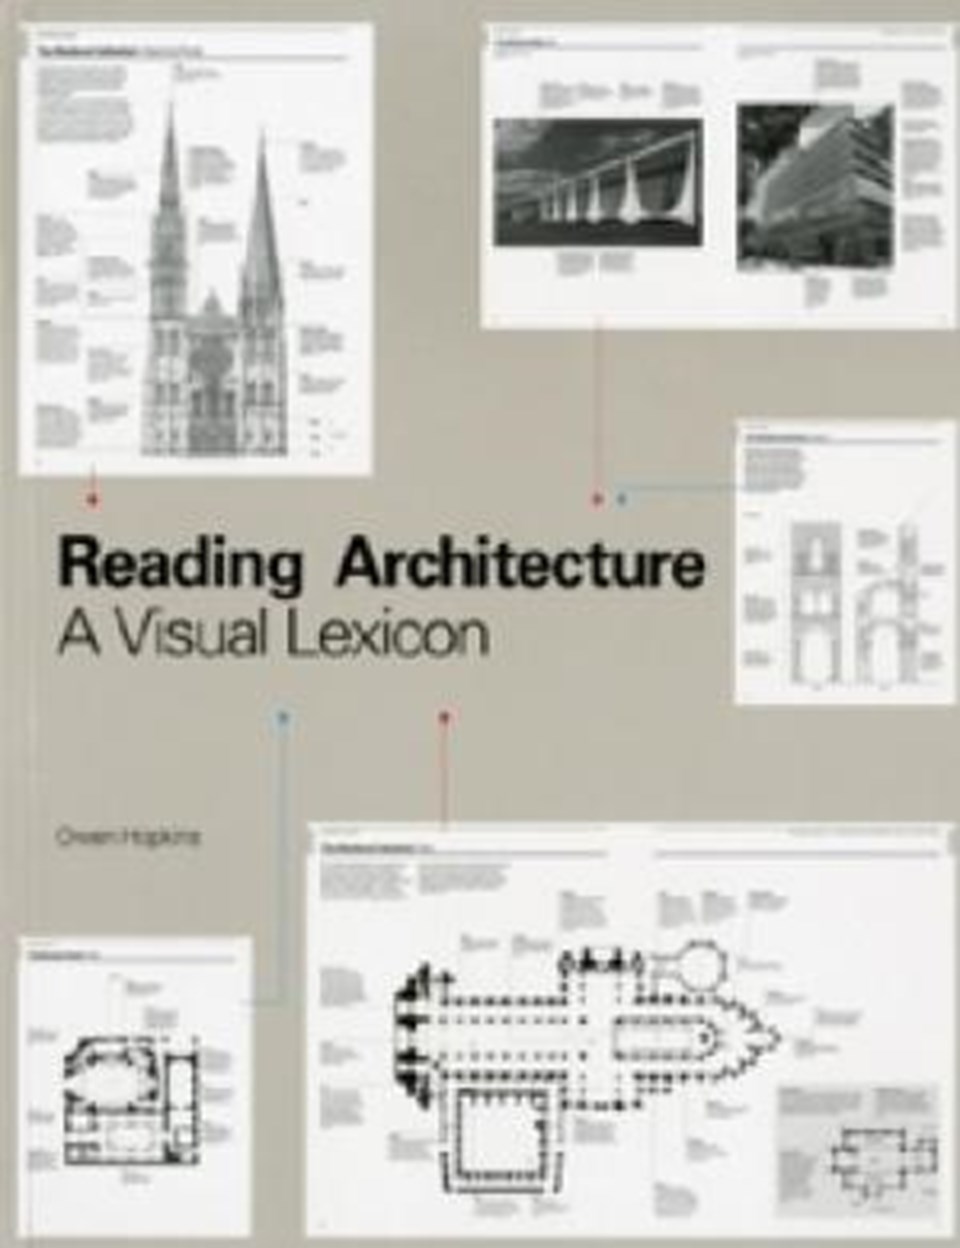 Reading Architecture - A Visual Lexicon